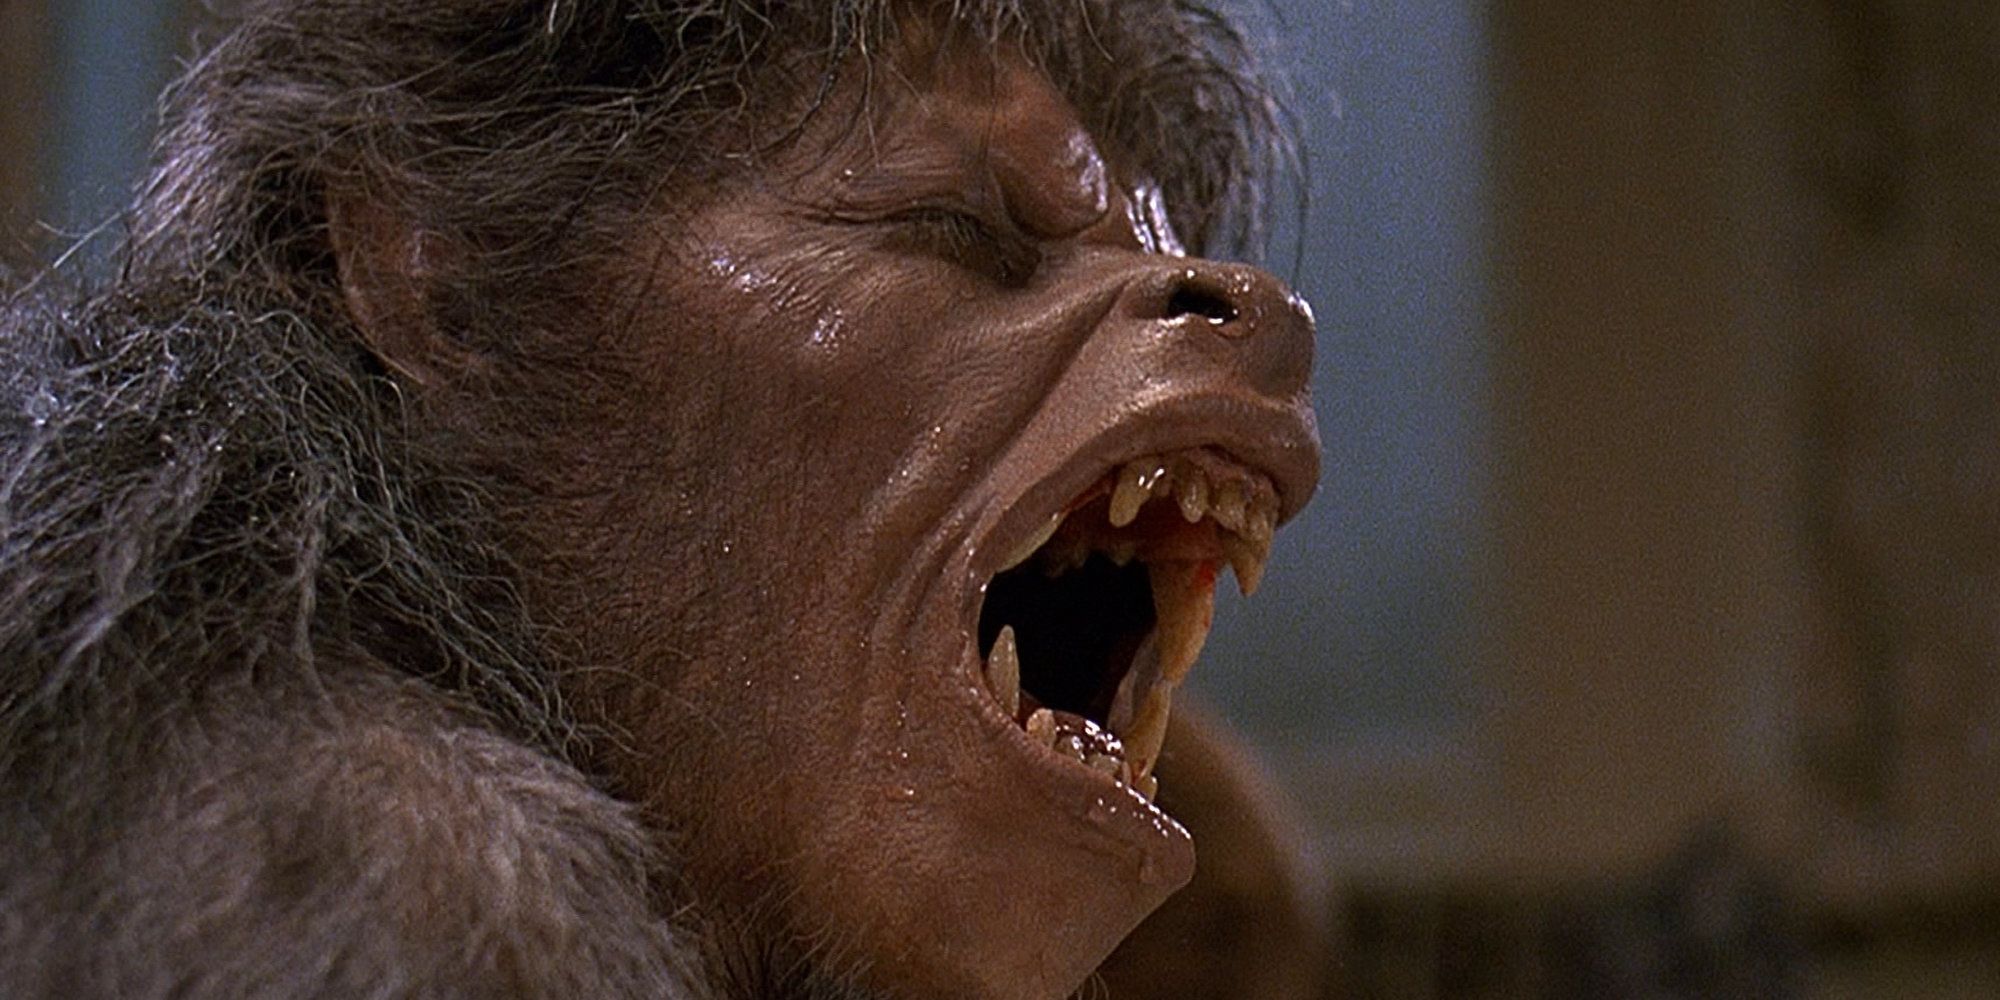 The transformation scene in An American Werewolf in London